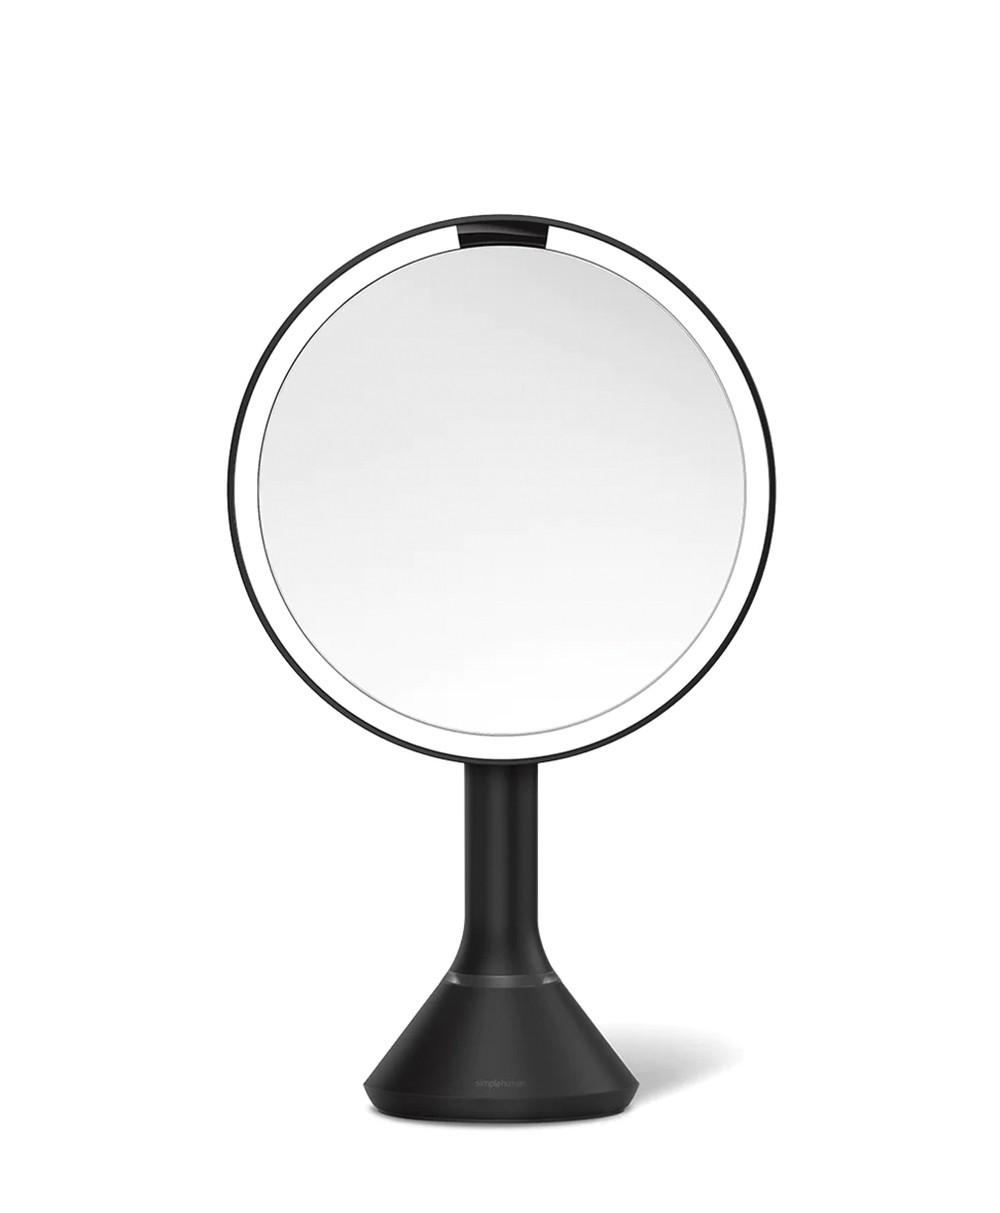 Hier abgebildet ein Produktbild eines Kosmetikspiegels von simplehuman in mattschwarz